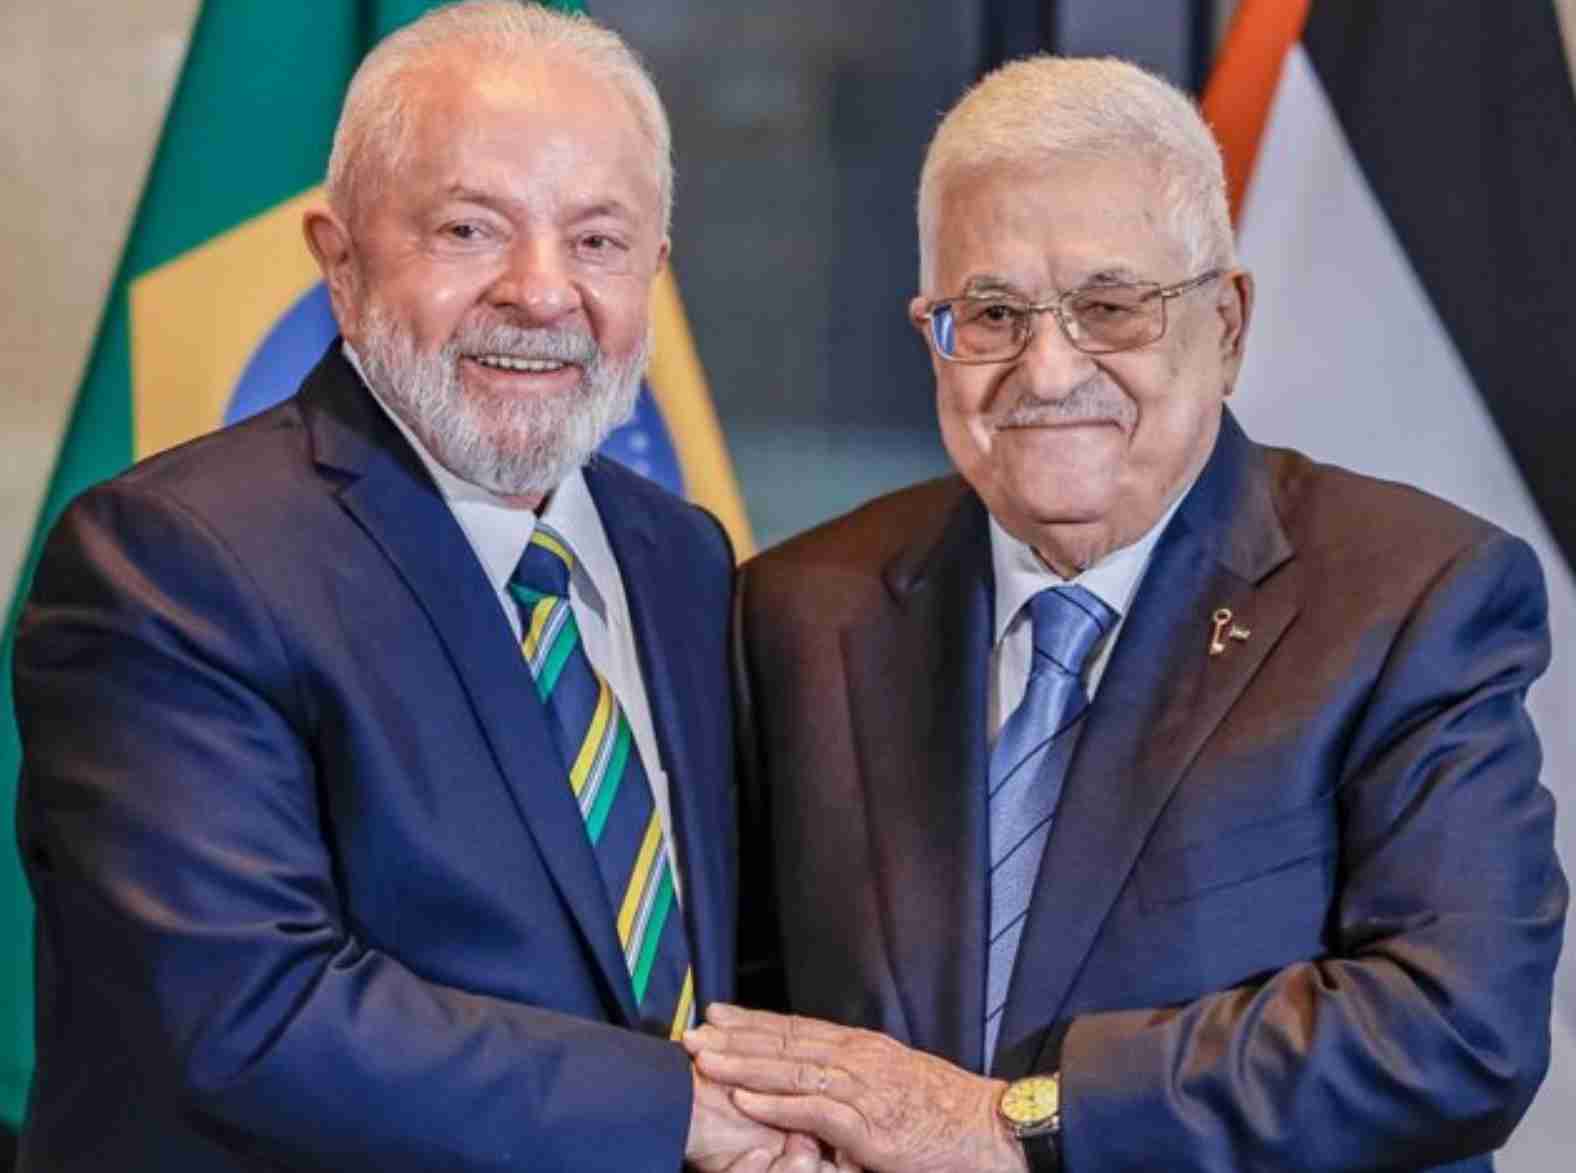 Política externa controversa: O questionável apoio do Brasil à acusação contra Israel